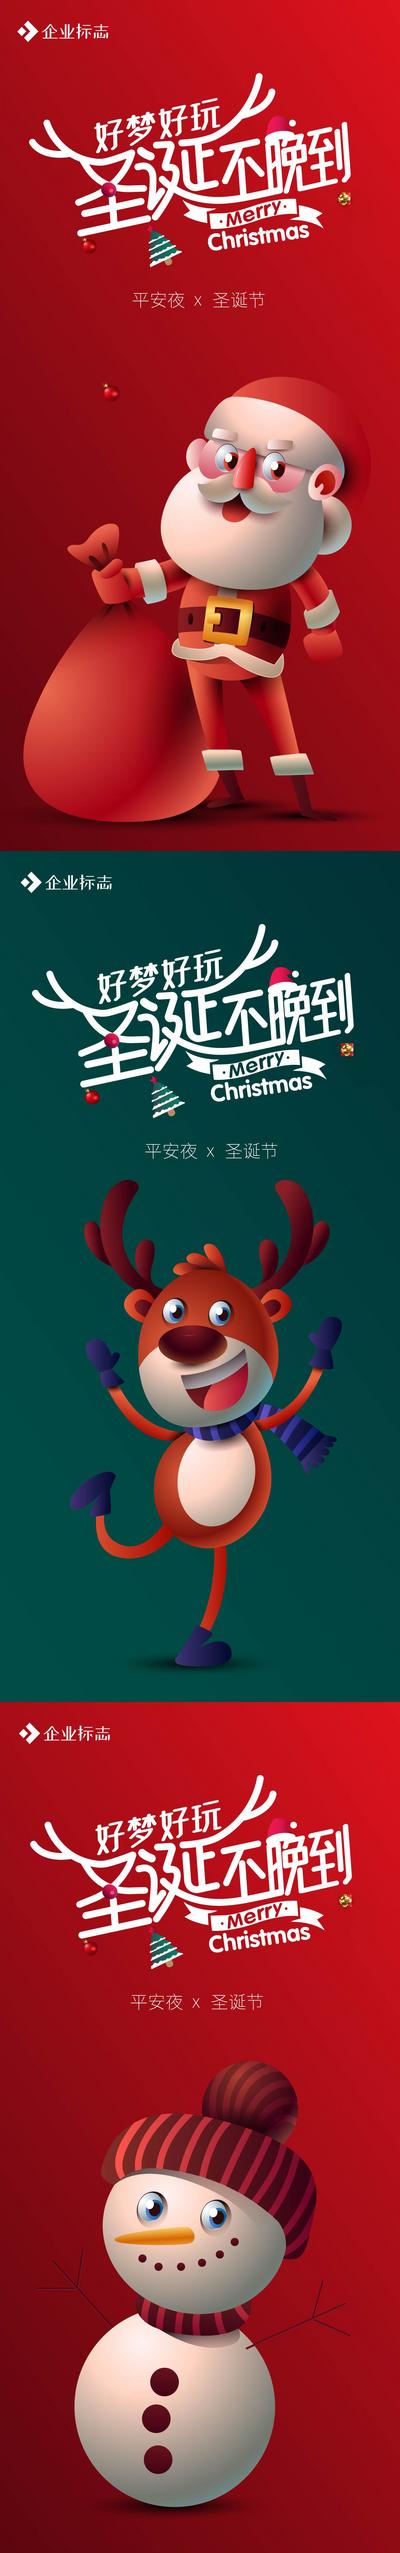 【南门网】海报 公历节日 圣诞节 平安夜 圣诞老人 鹿 雪人 卡通